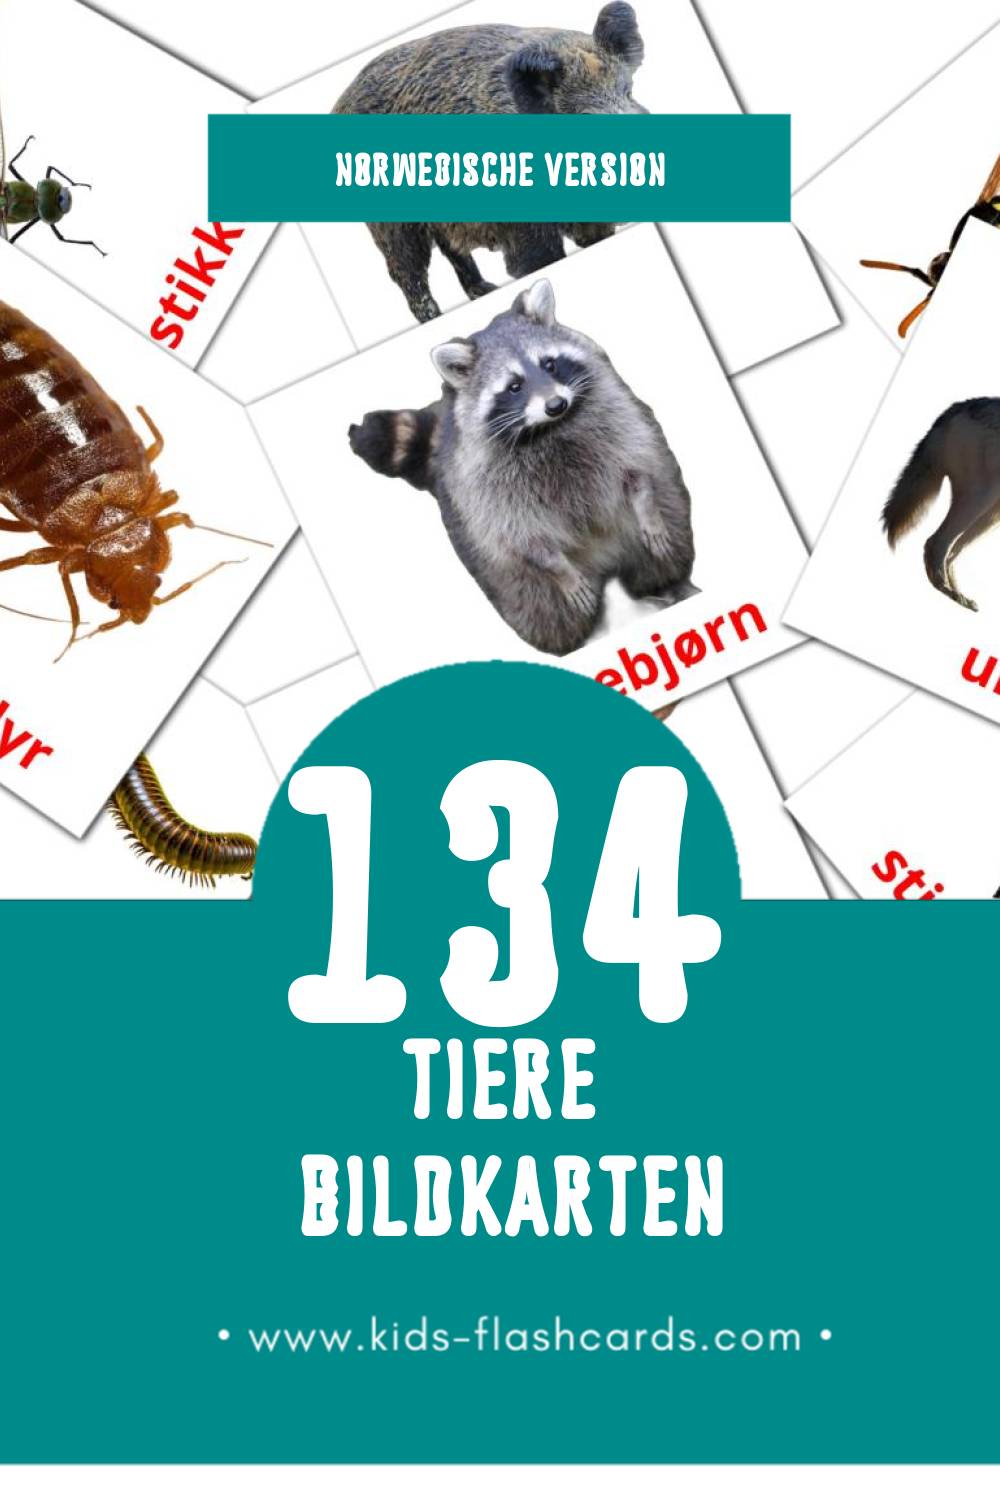 Visual Dyr Flashcards für Kleinkinder (134 Karten in Norwegisch)